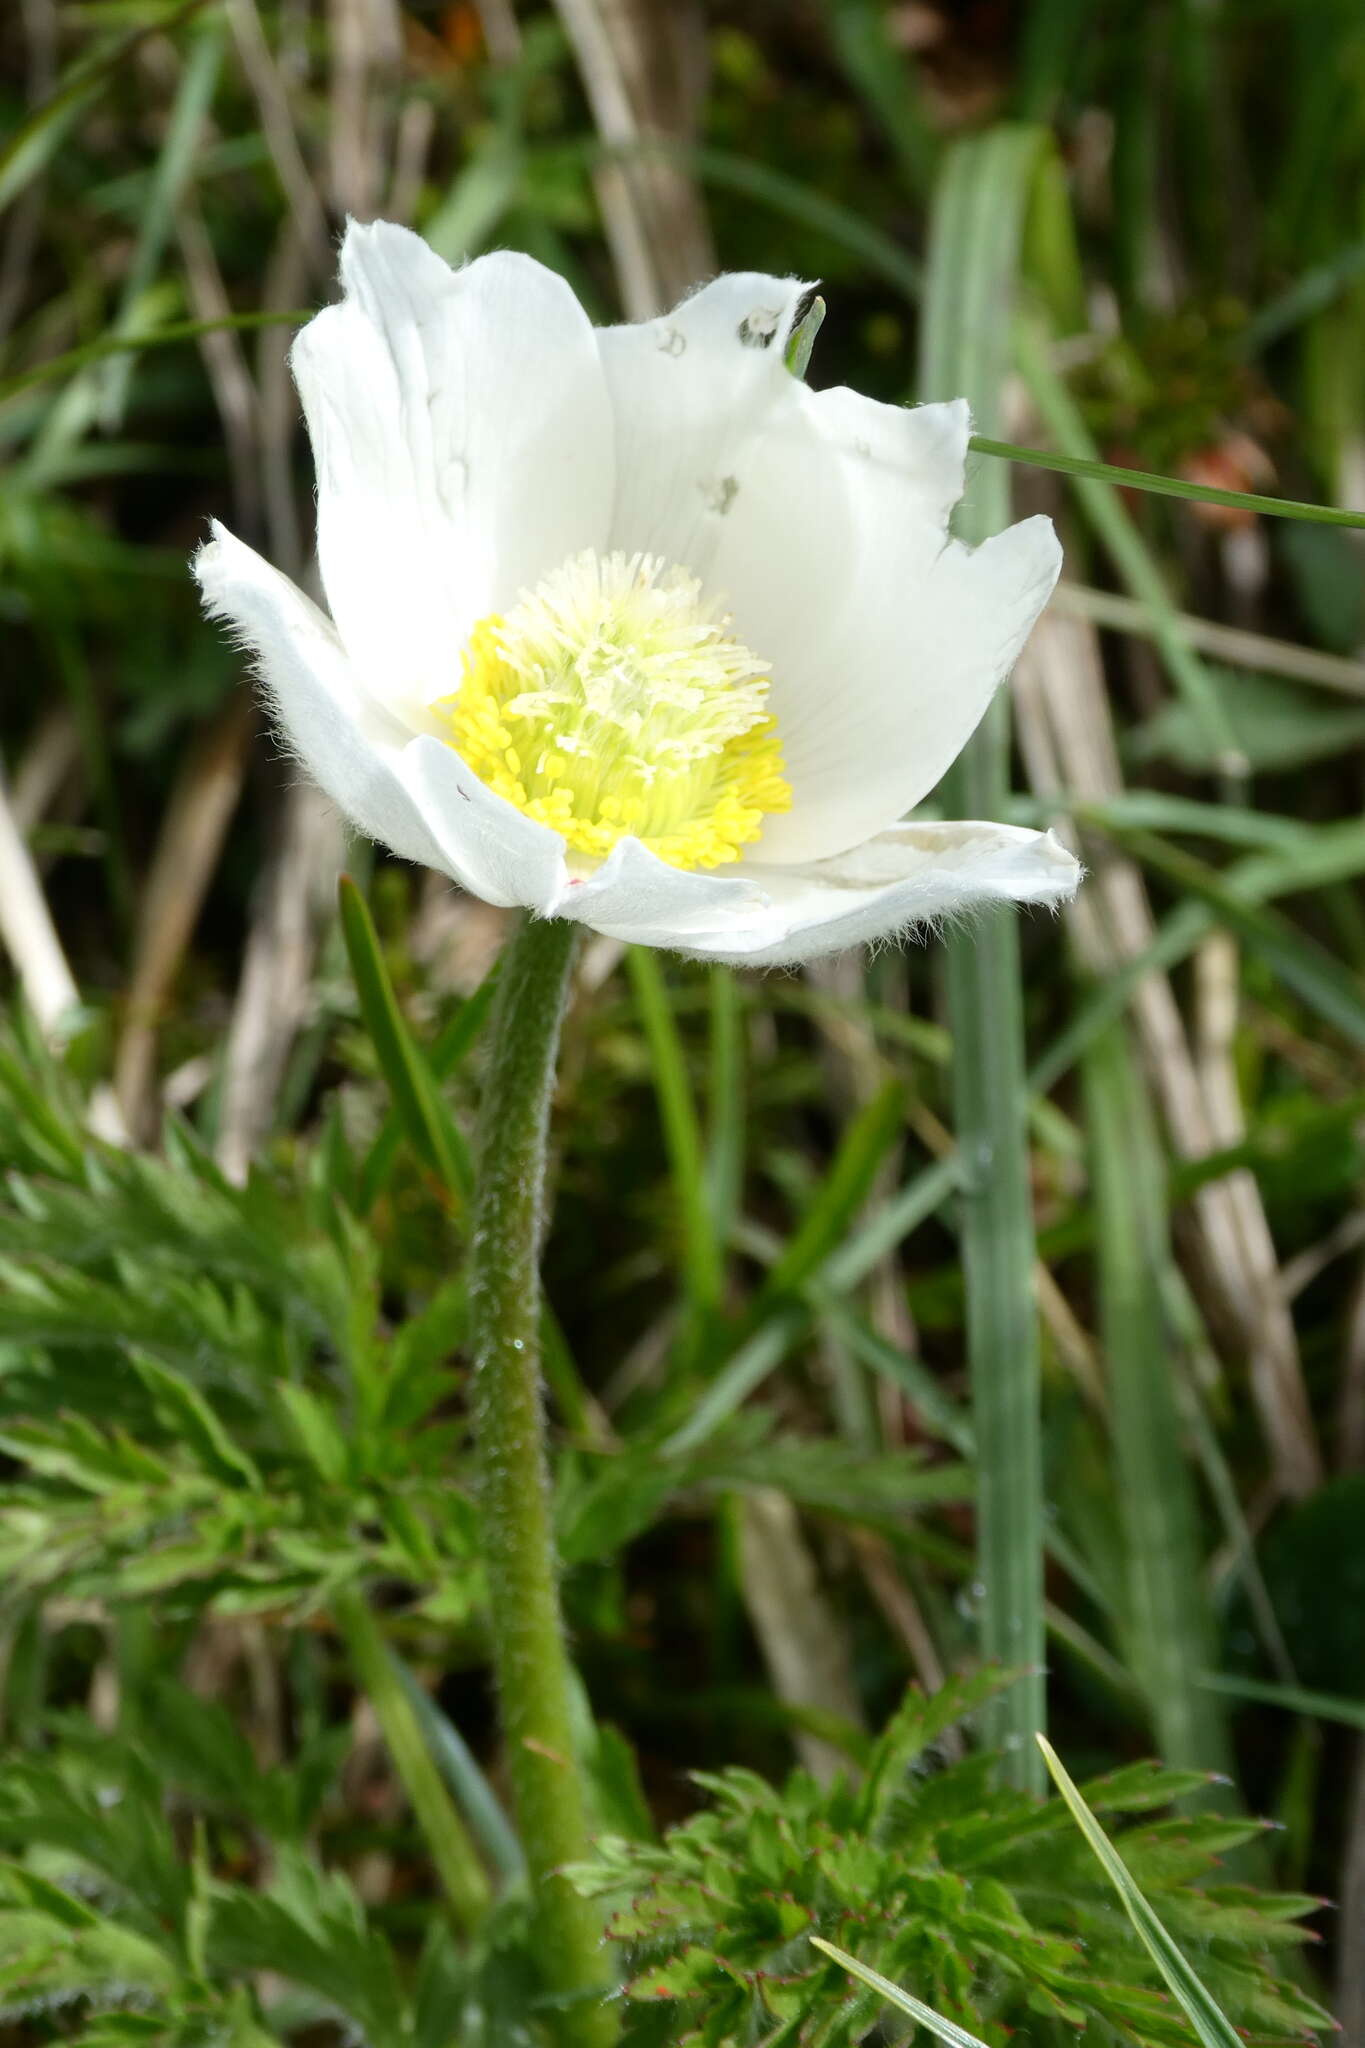 Sivun Pulsatilla alpina subsp. alpina kuva